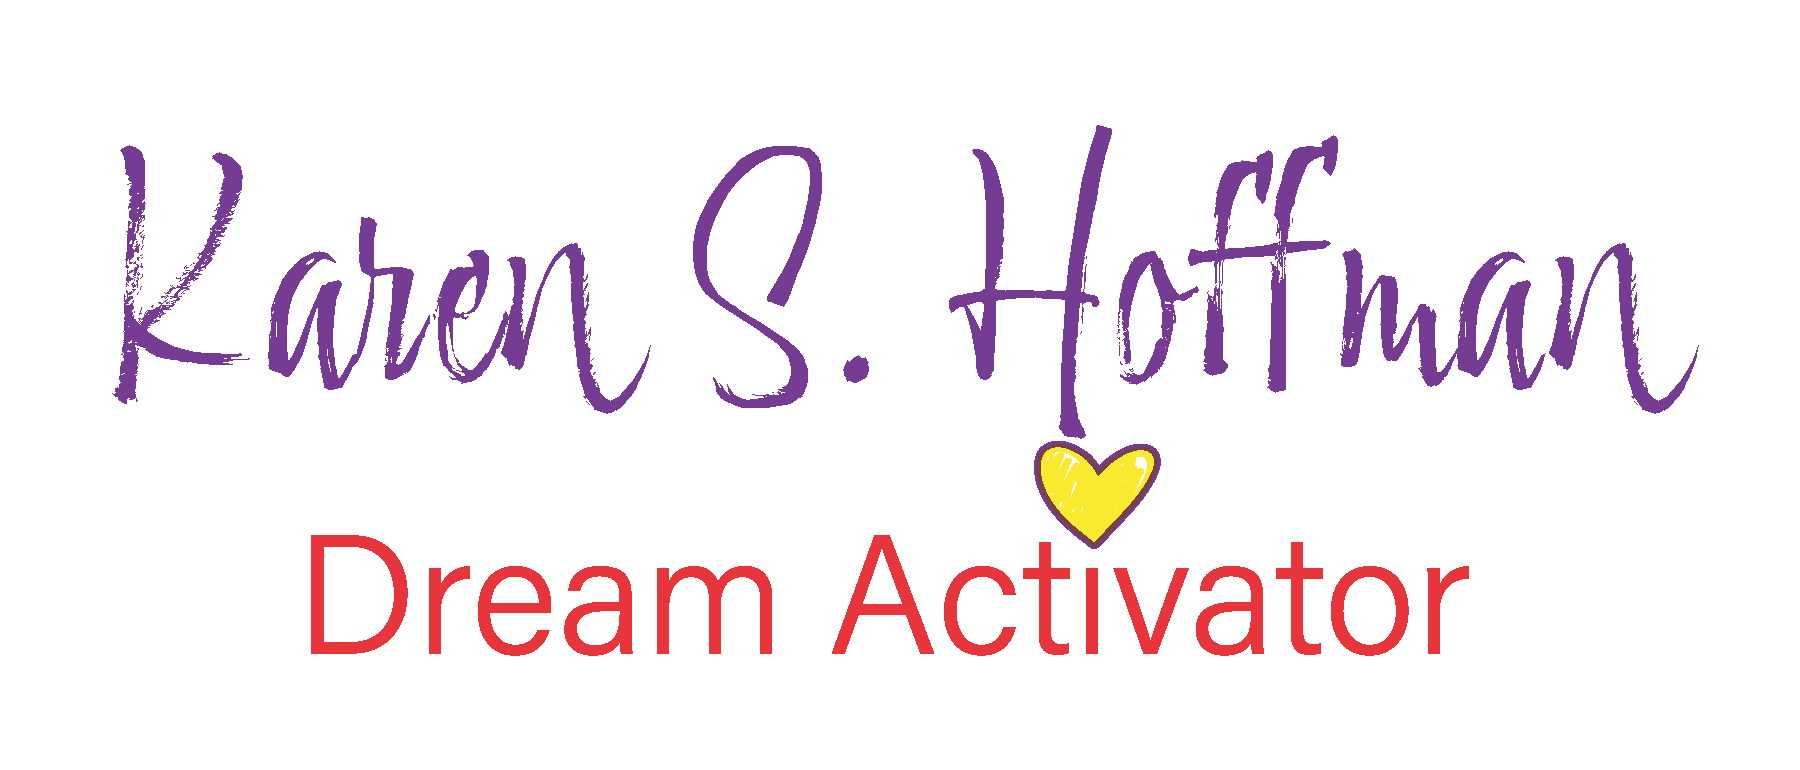 Karen S. Hoffman Dream Activator